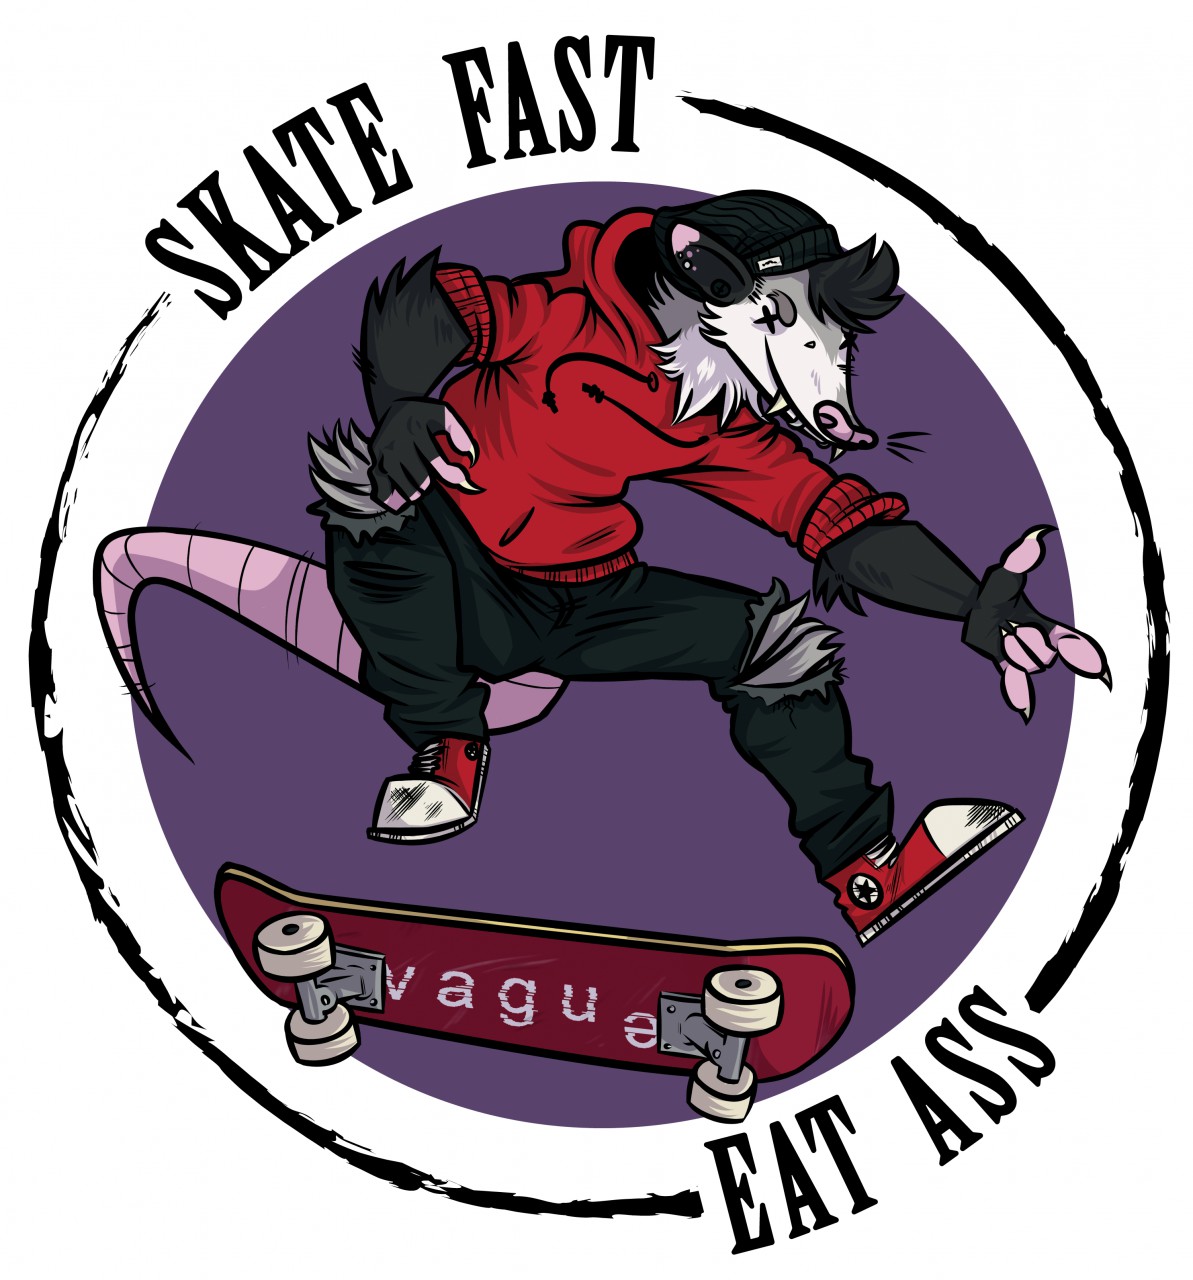 Fast eat ass skate skate fast